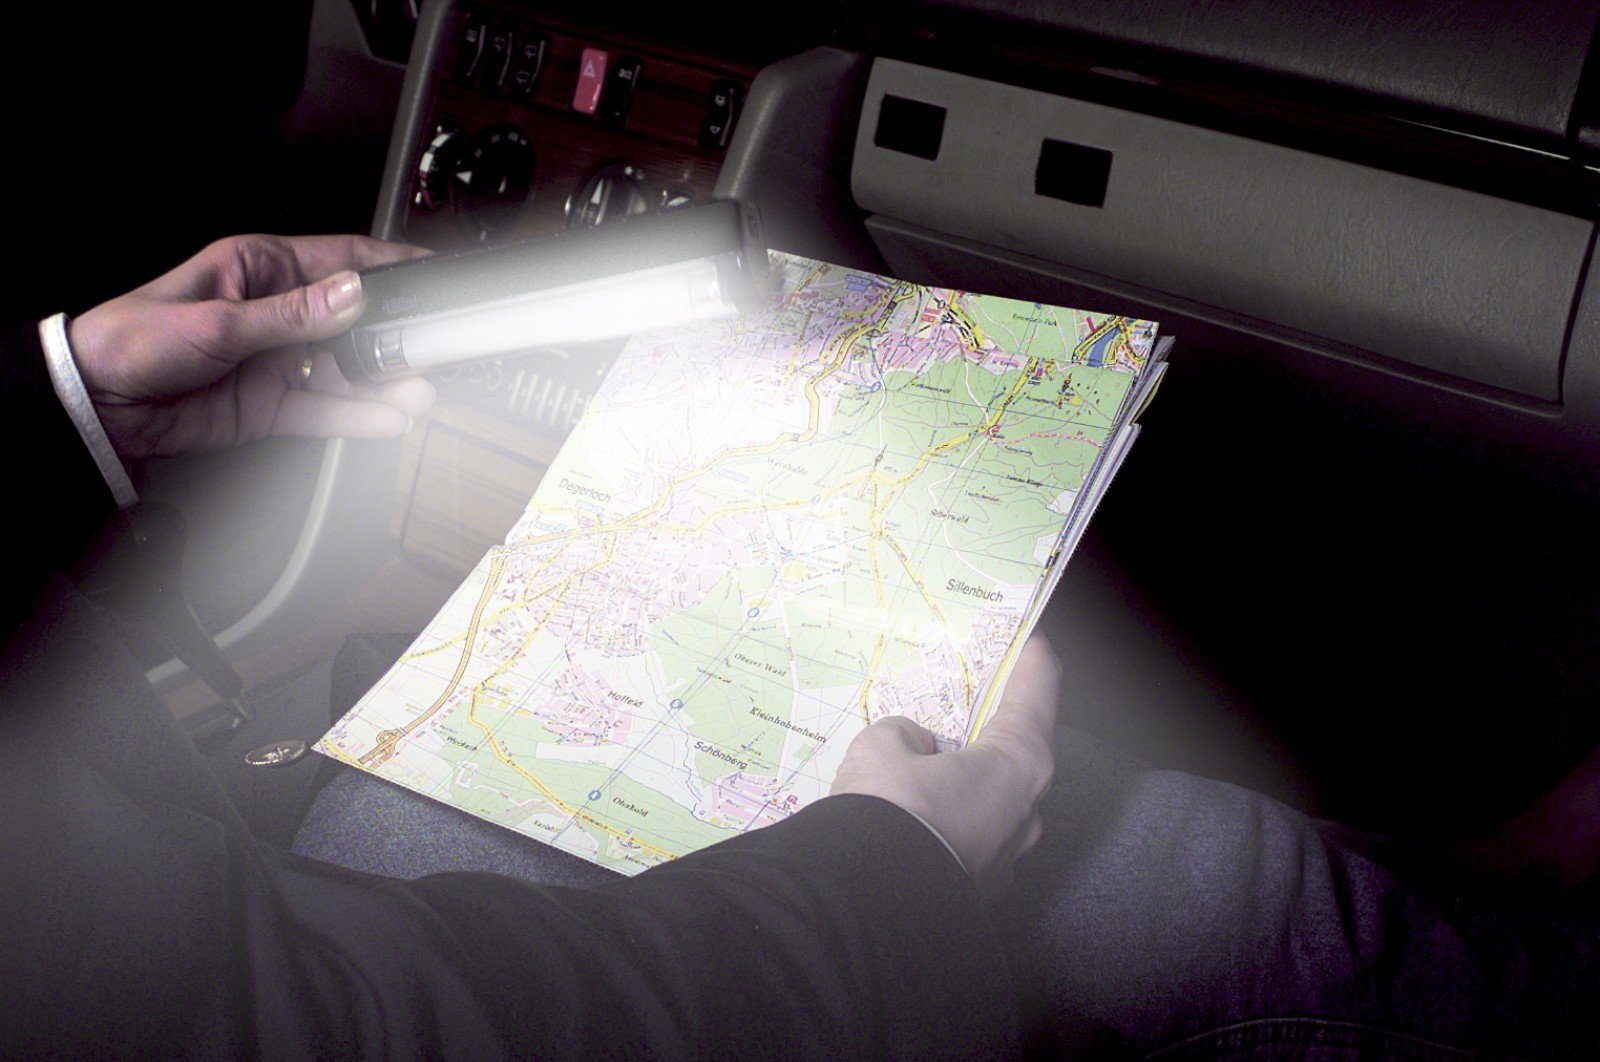 Leselampe Taschenlampe Leuchte KFZ Leuchte Leselicht HR Lampe Ambiente Auto Zusatz Autocomfort